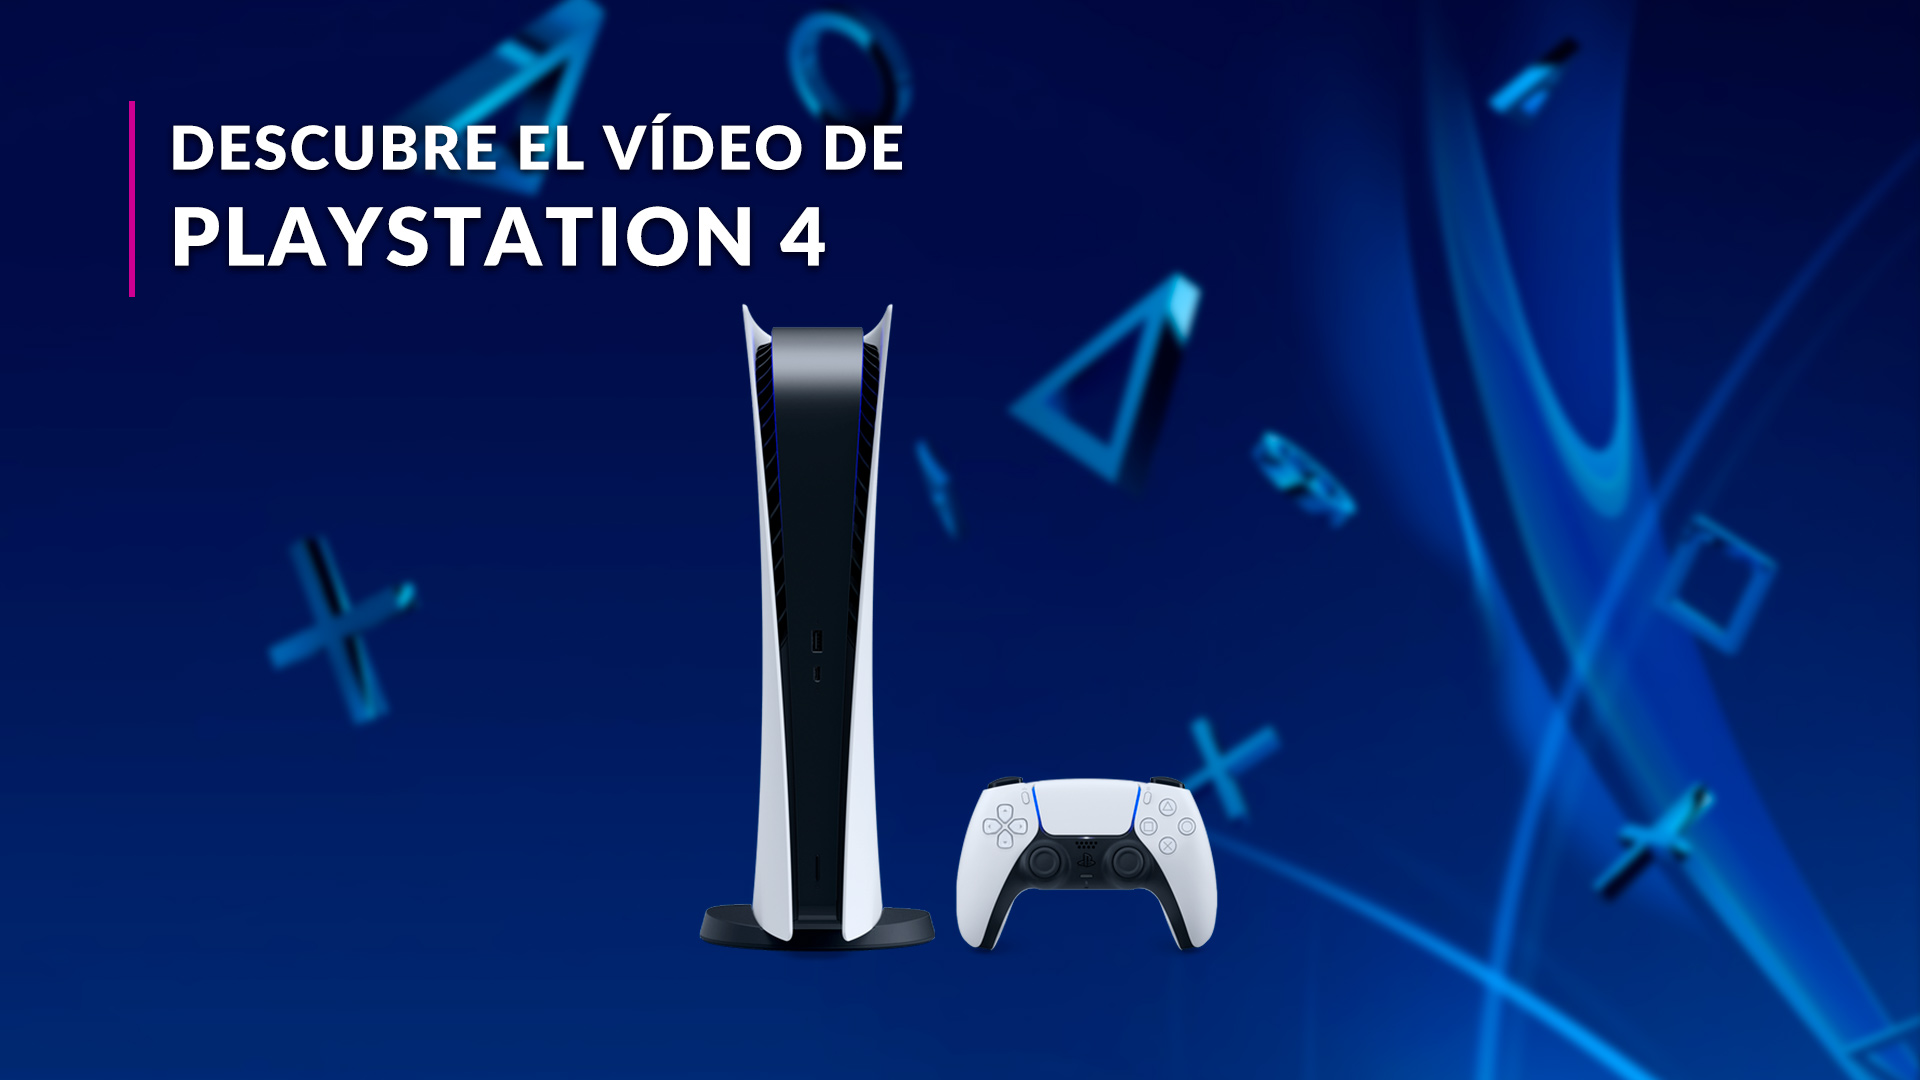 Auriculares, mandos inalámbricos, sillas de gaming, webcams, volantes  Accesorios para exprimir al máximo la PlayStation 5